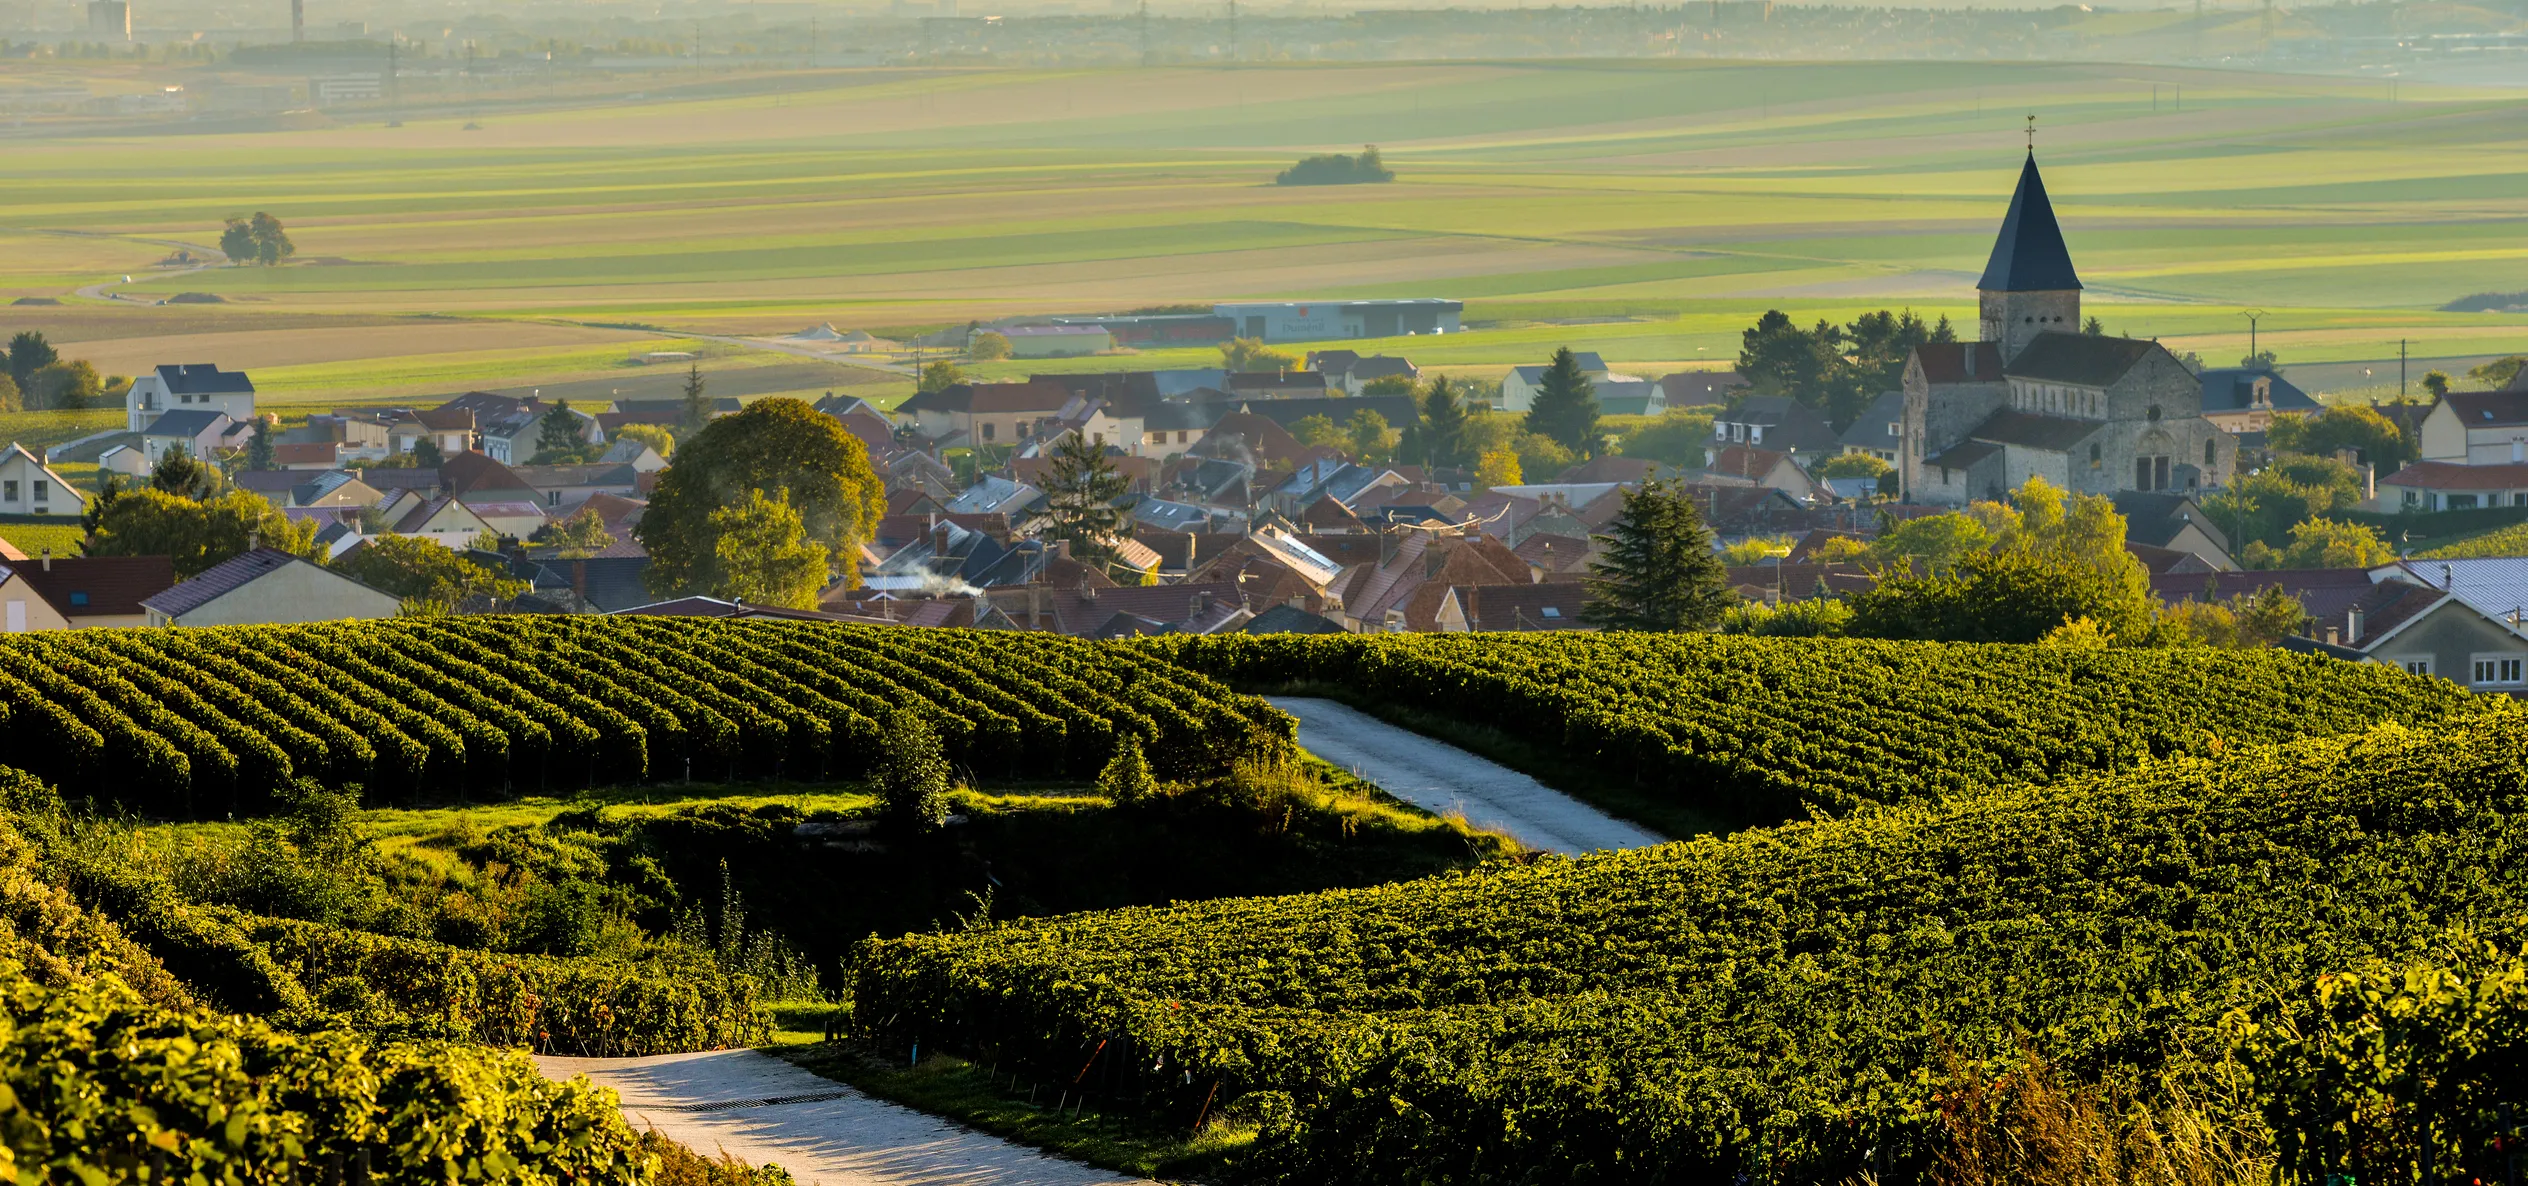 Sacy, au cœur de la Montagne de Reims et de l'appellation "champagne". | © iStock / Esperanza33